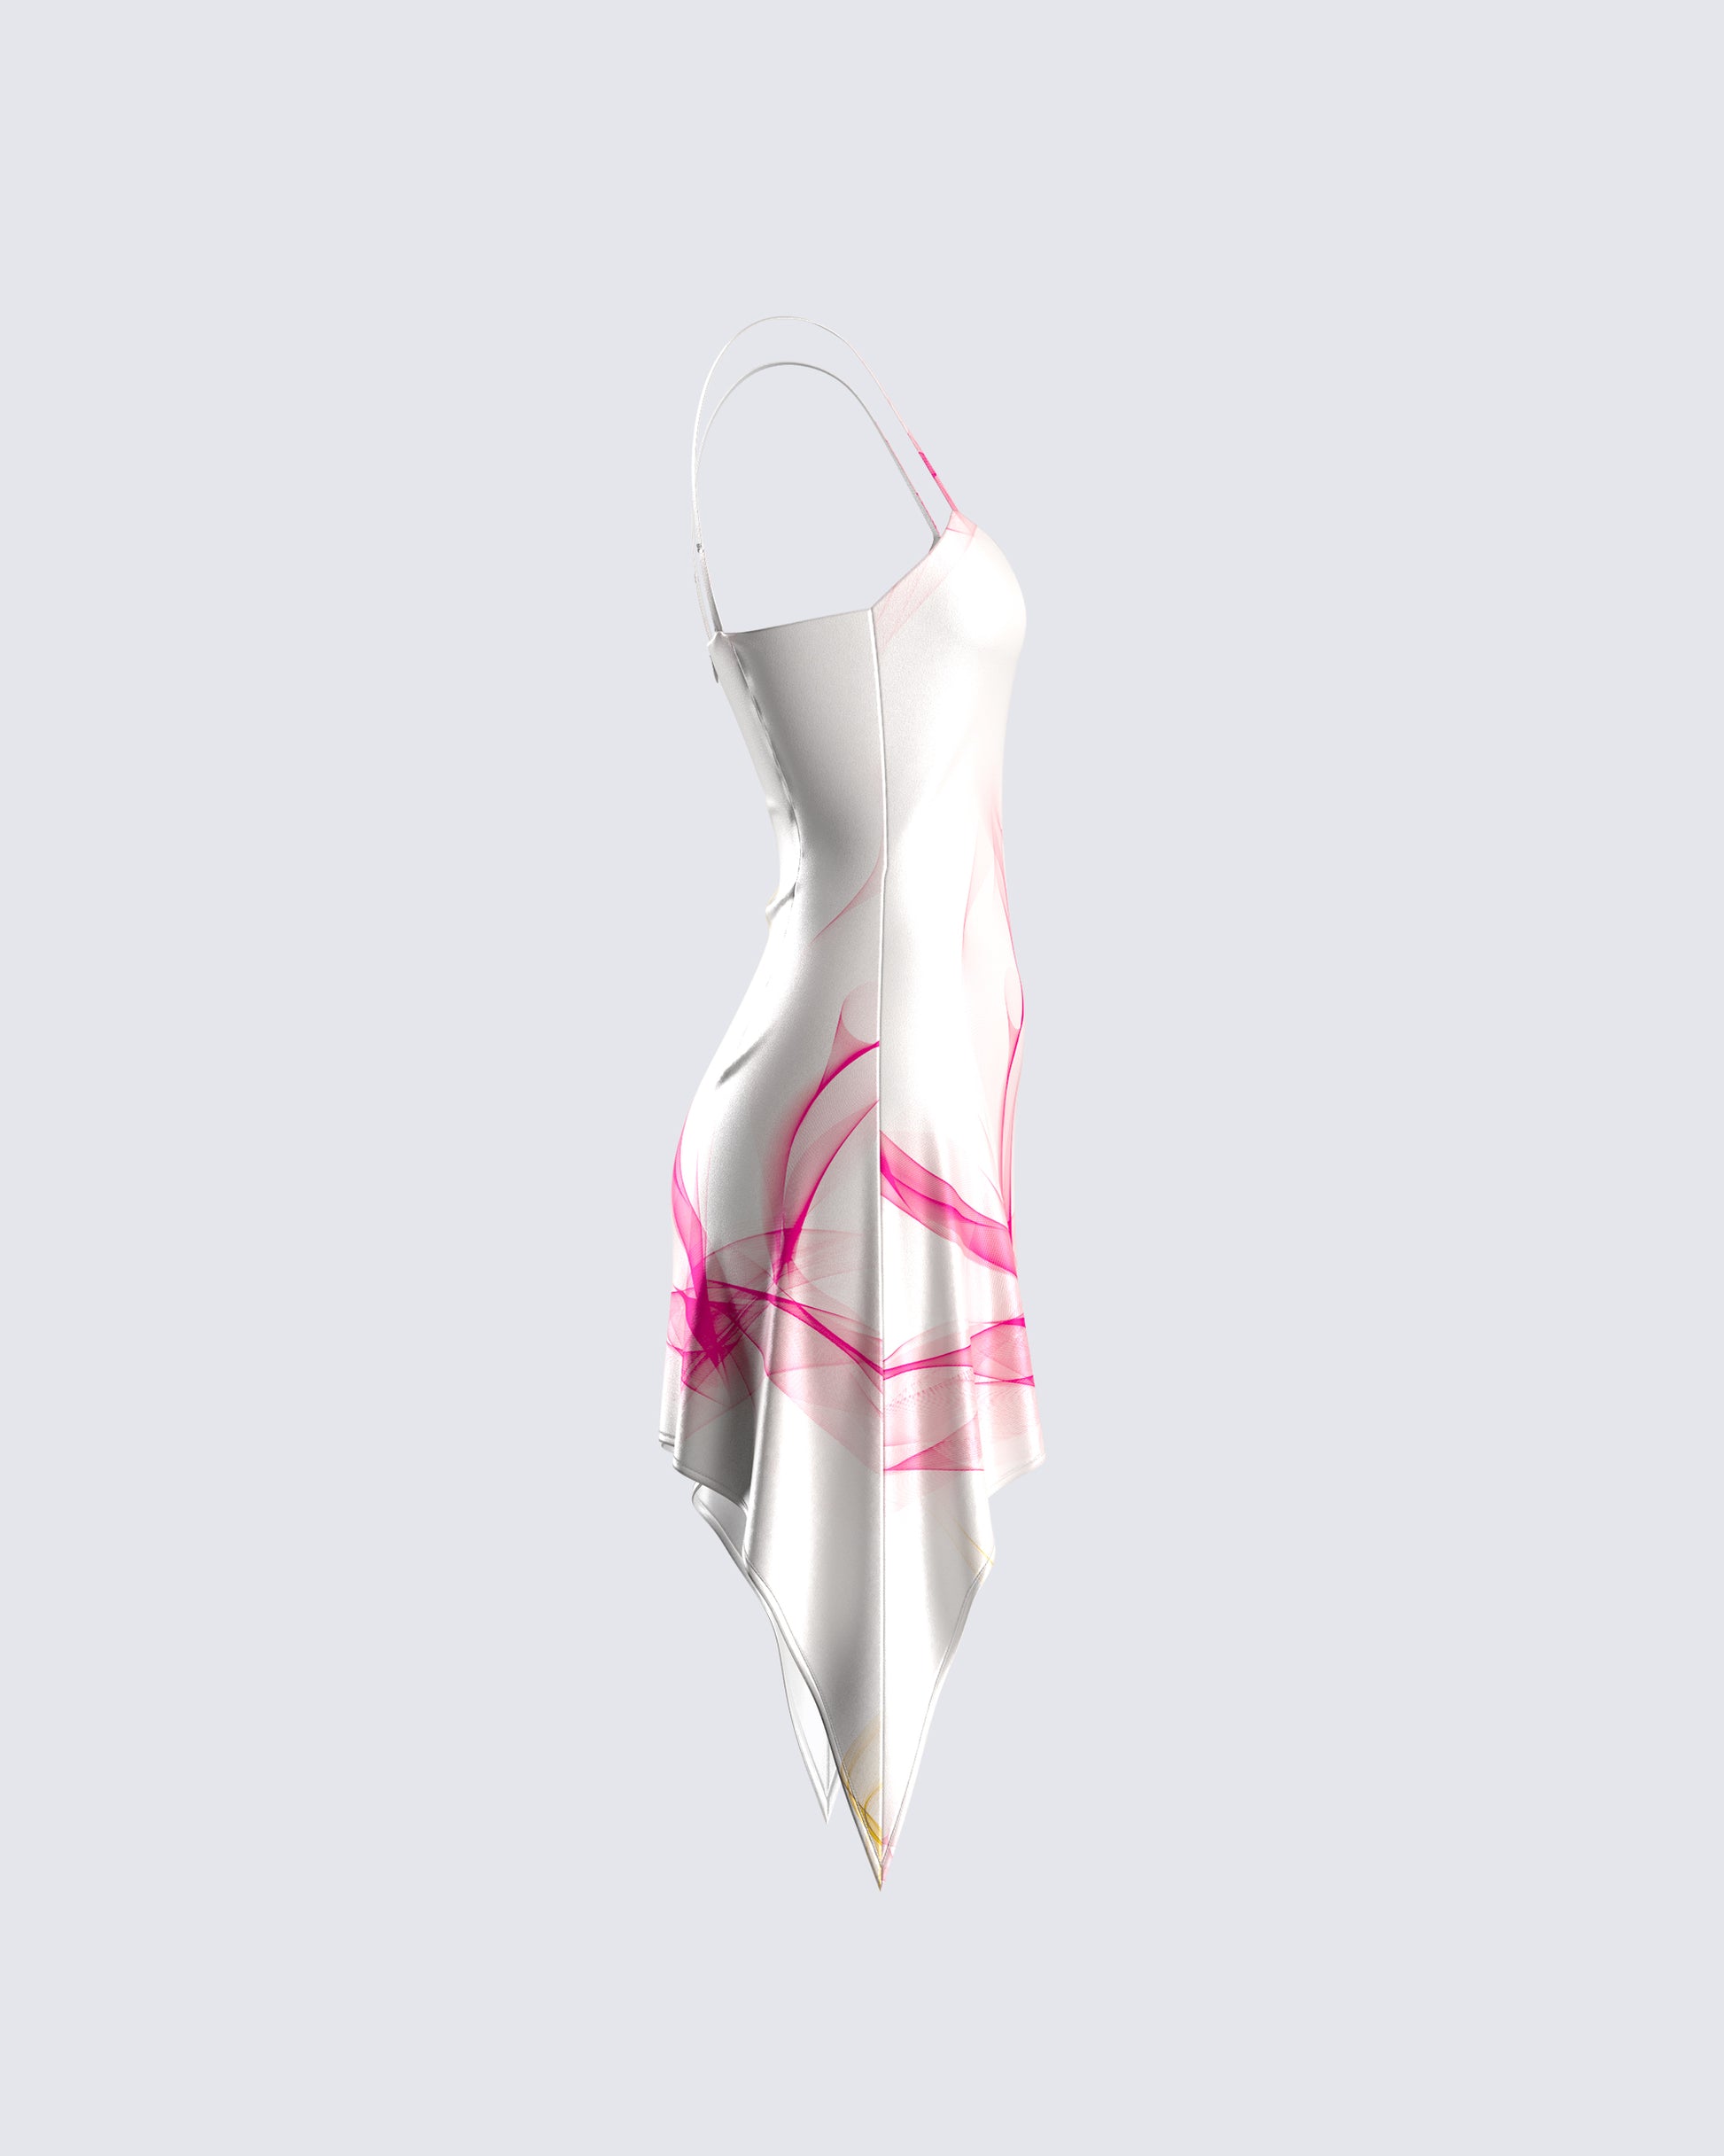 JF431 Pant in Pink – minimal-theme-fashion